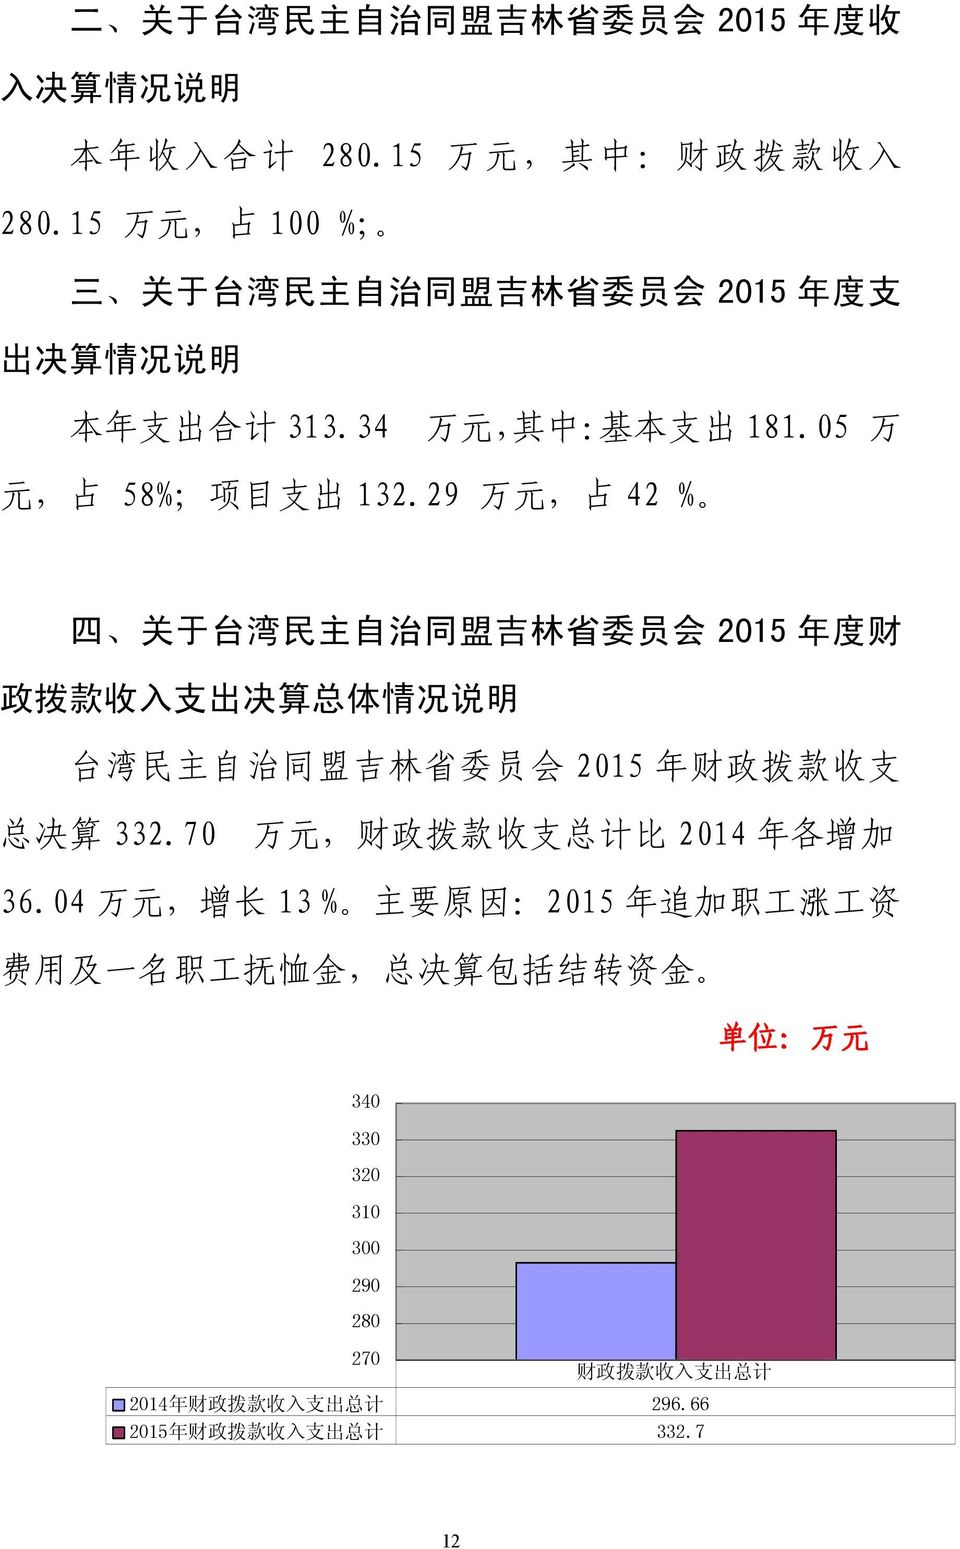 29 万 元, 占 42 % 四 关 于 台 湾 民 主 自 治 同 盟 吉 林 省 委 员 会 2015 年 度 财 政 拨 款 收 入 支 出 决 算 总 体 情 况 说 明 台 湾 民 主 自 治 同 盟 吉 林 省 委 员 会 2015 年 财 政 拨 款 收 支 总 决 算 332.